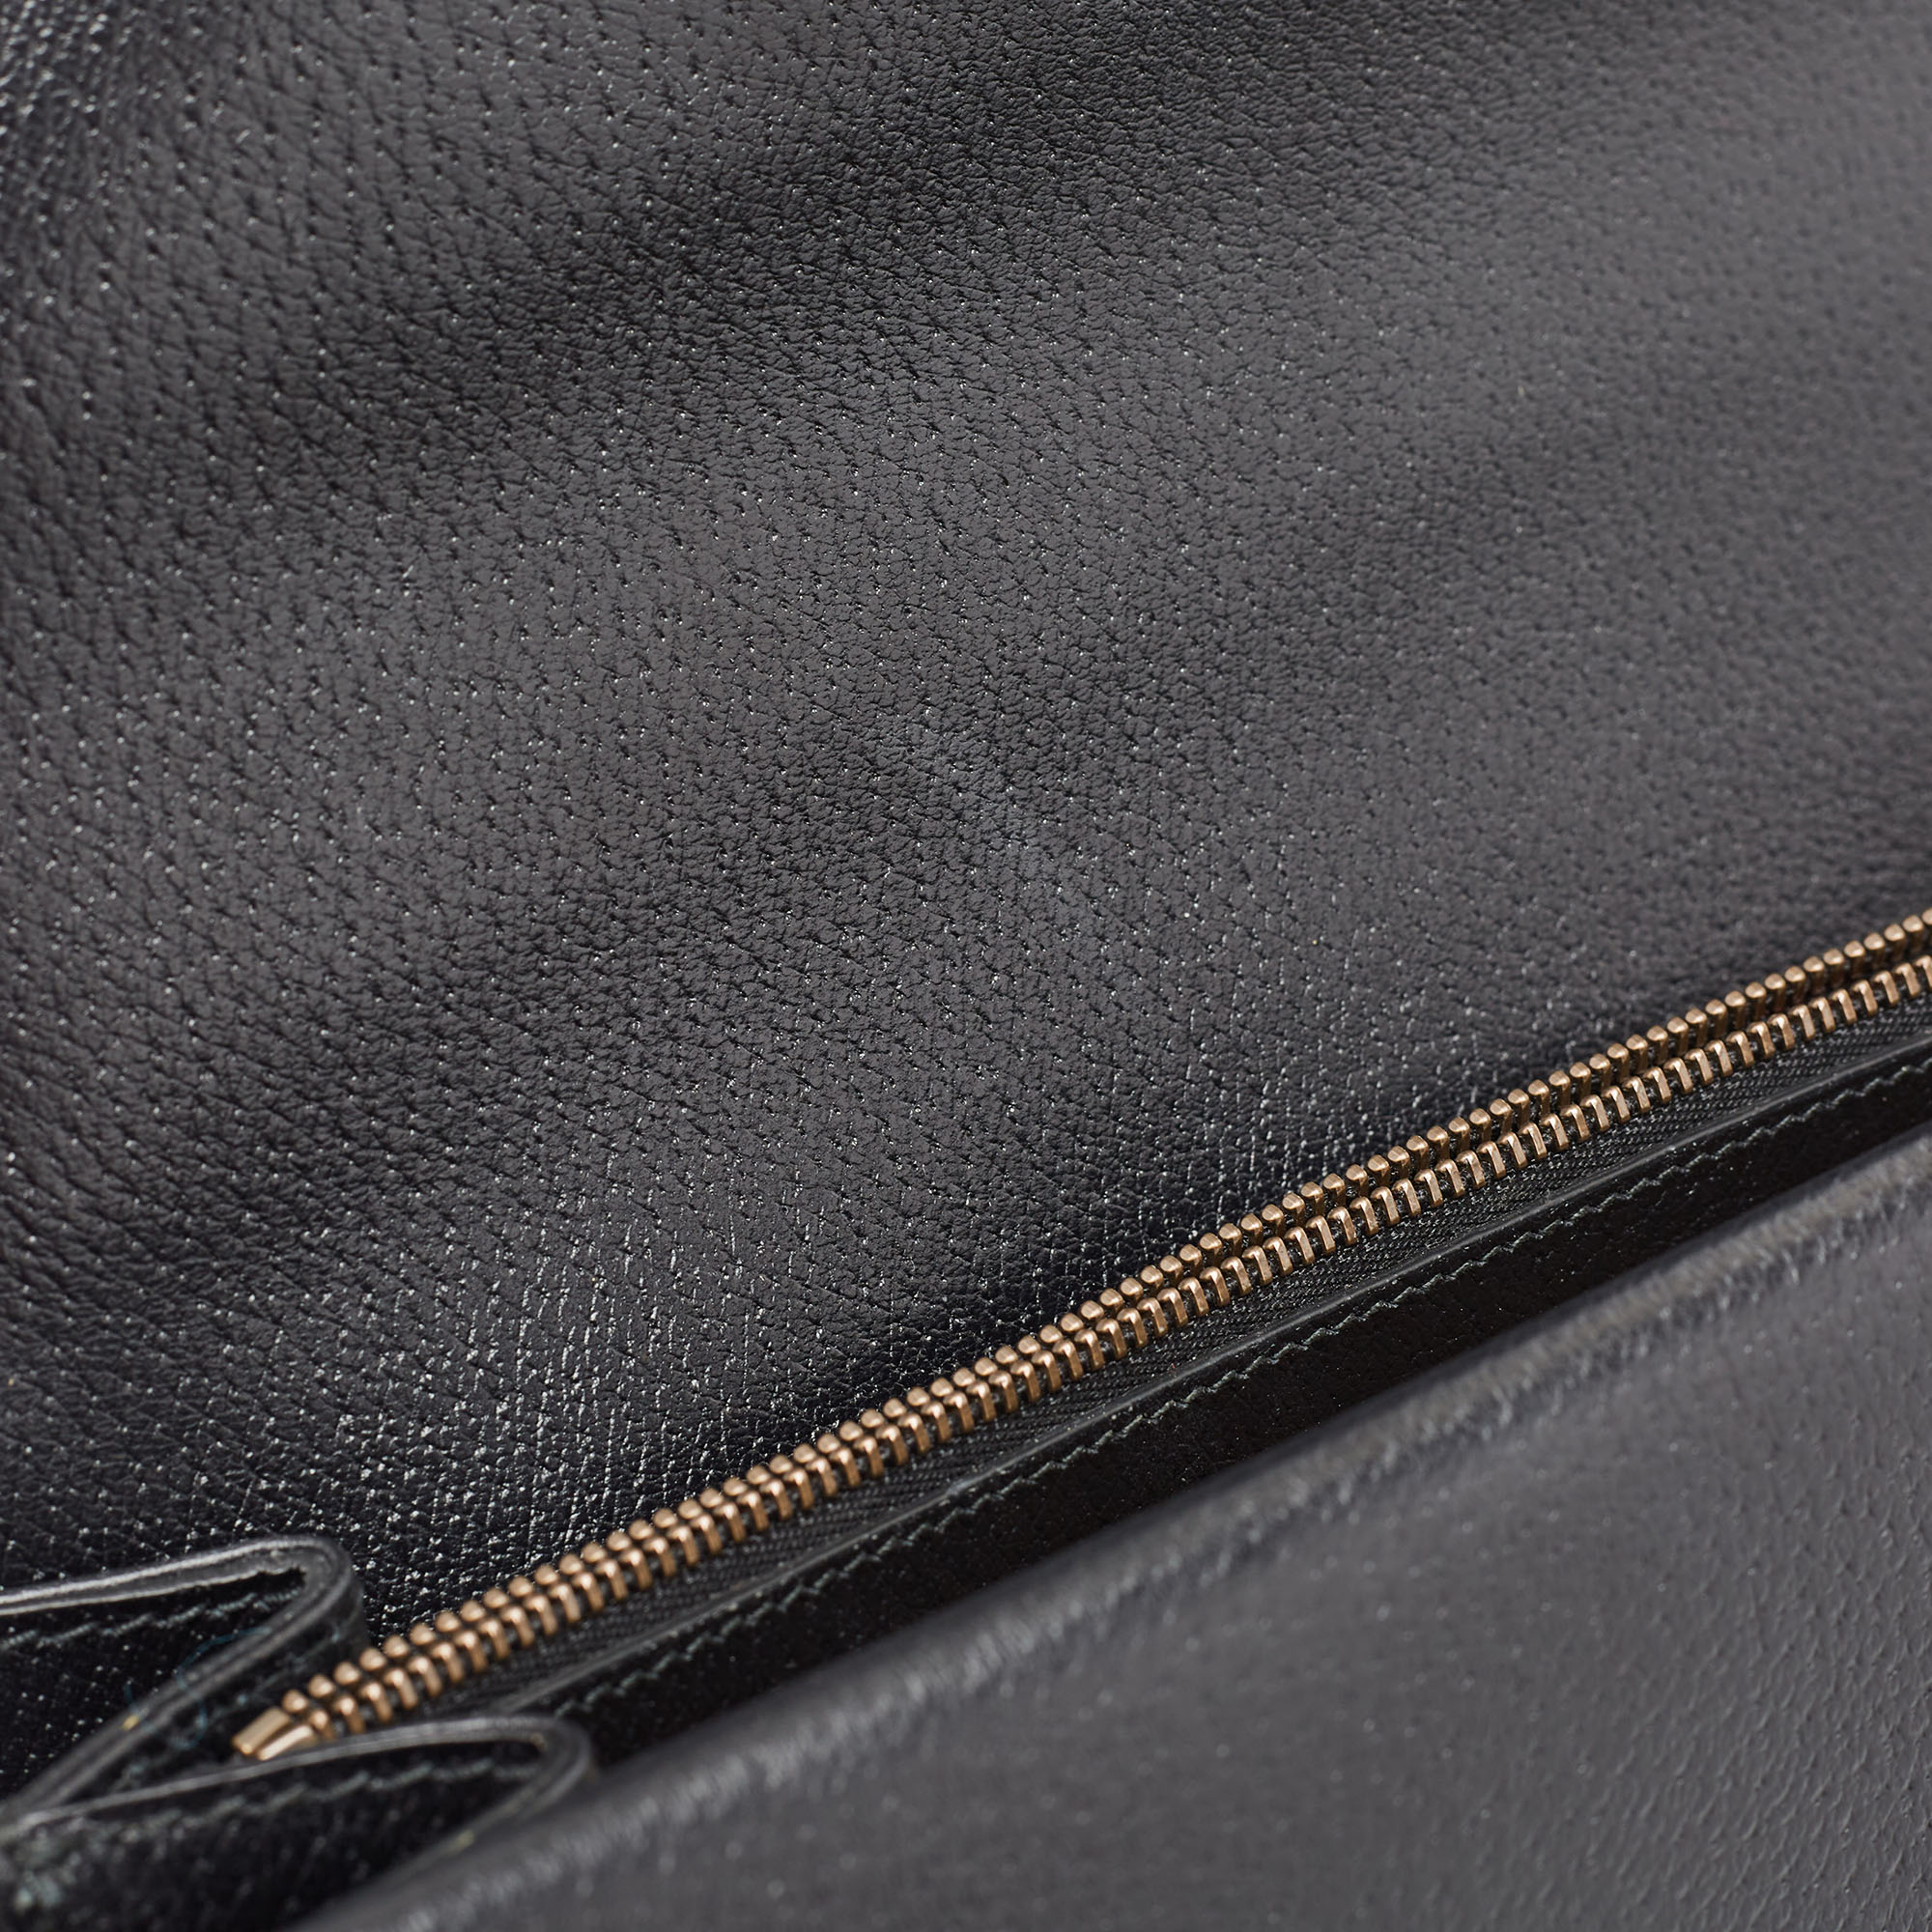 Gucci Black Leather Medium Embroidered Web Dionysus Shoulder Bag